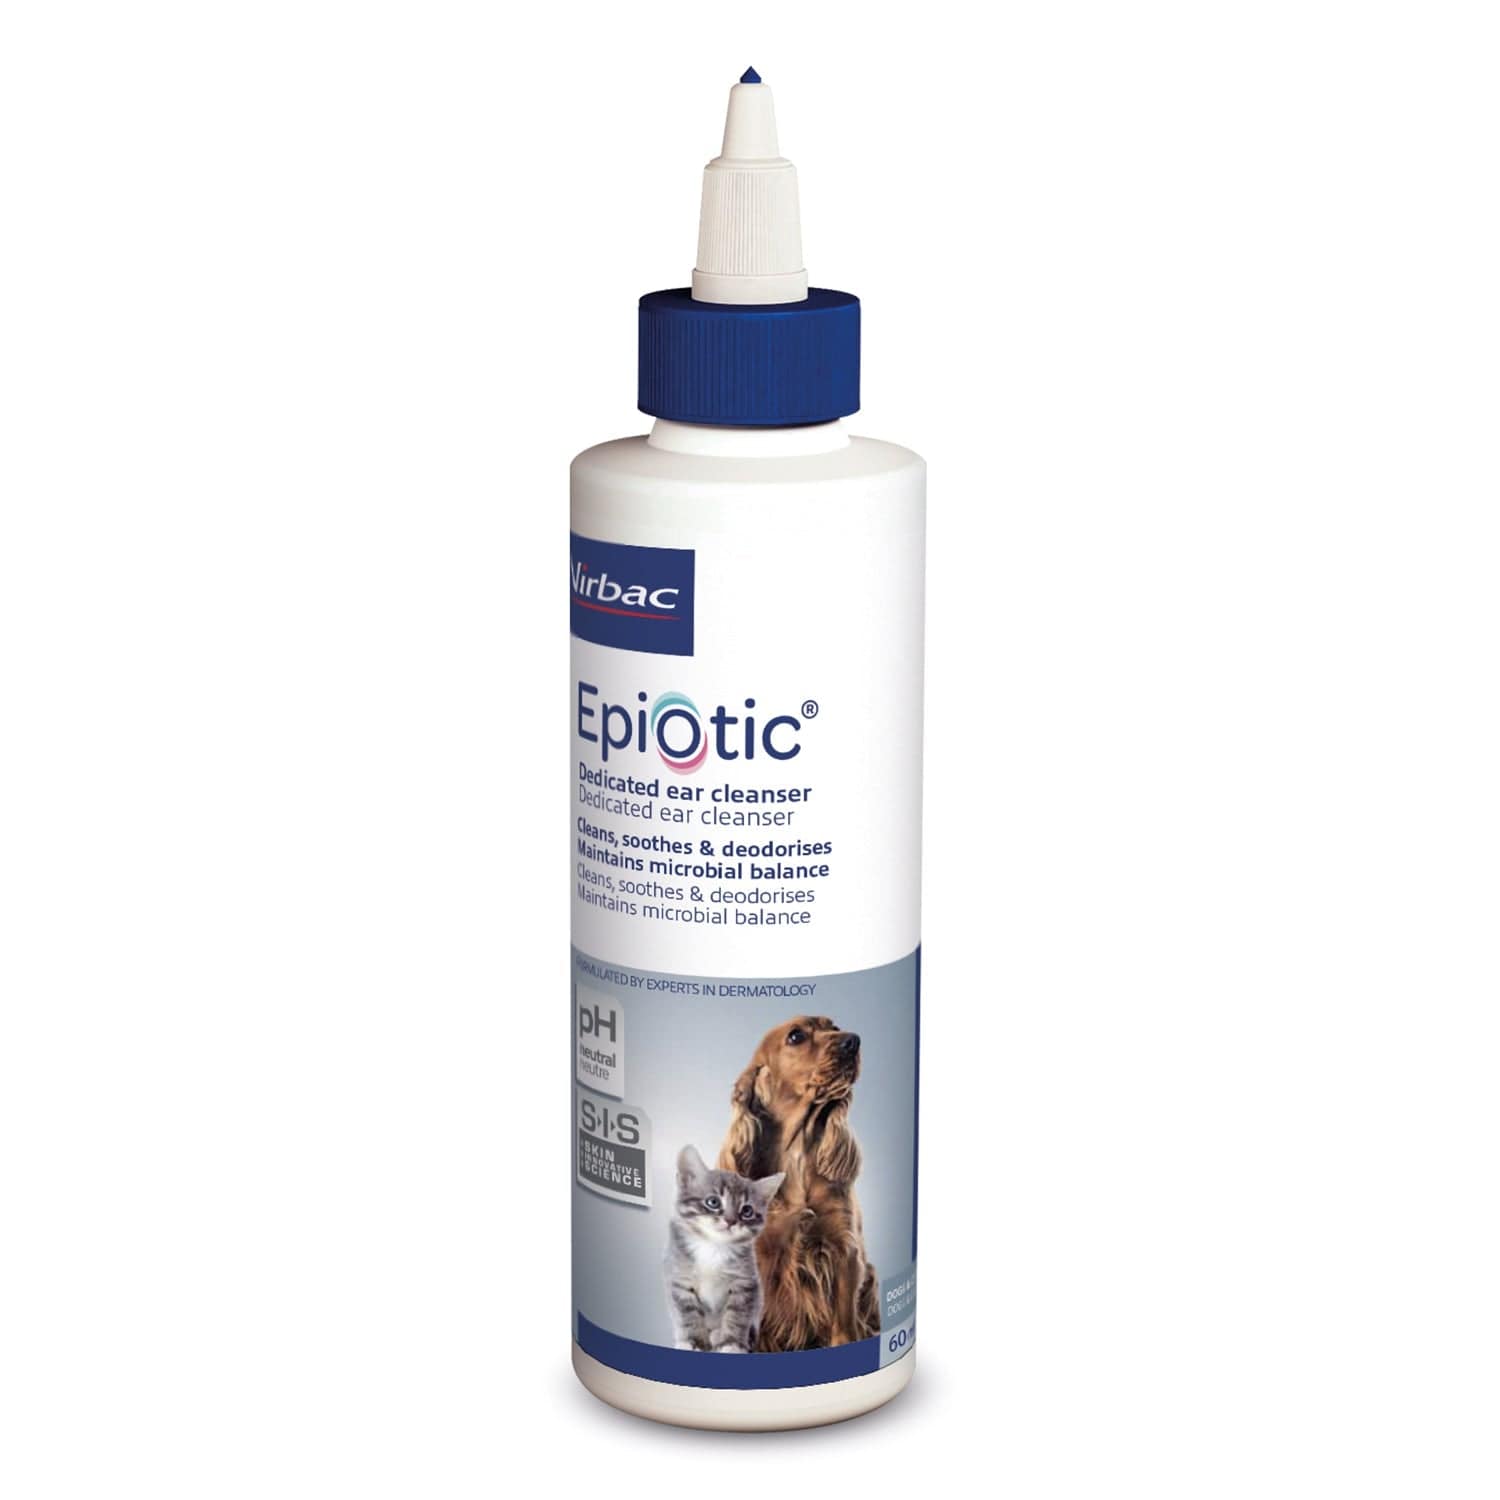 Epiotic ear cleaner